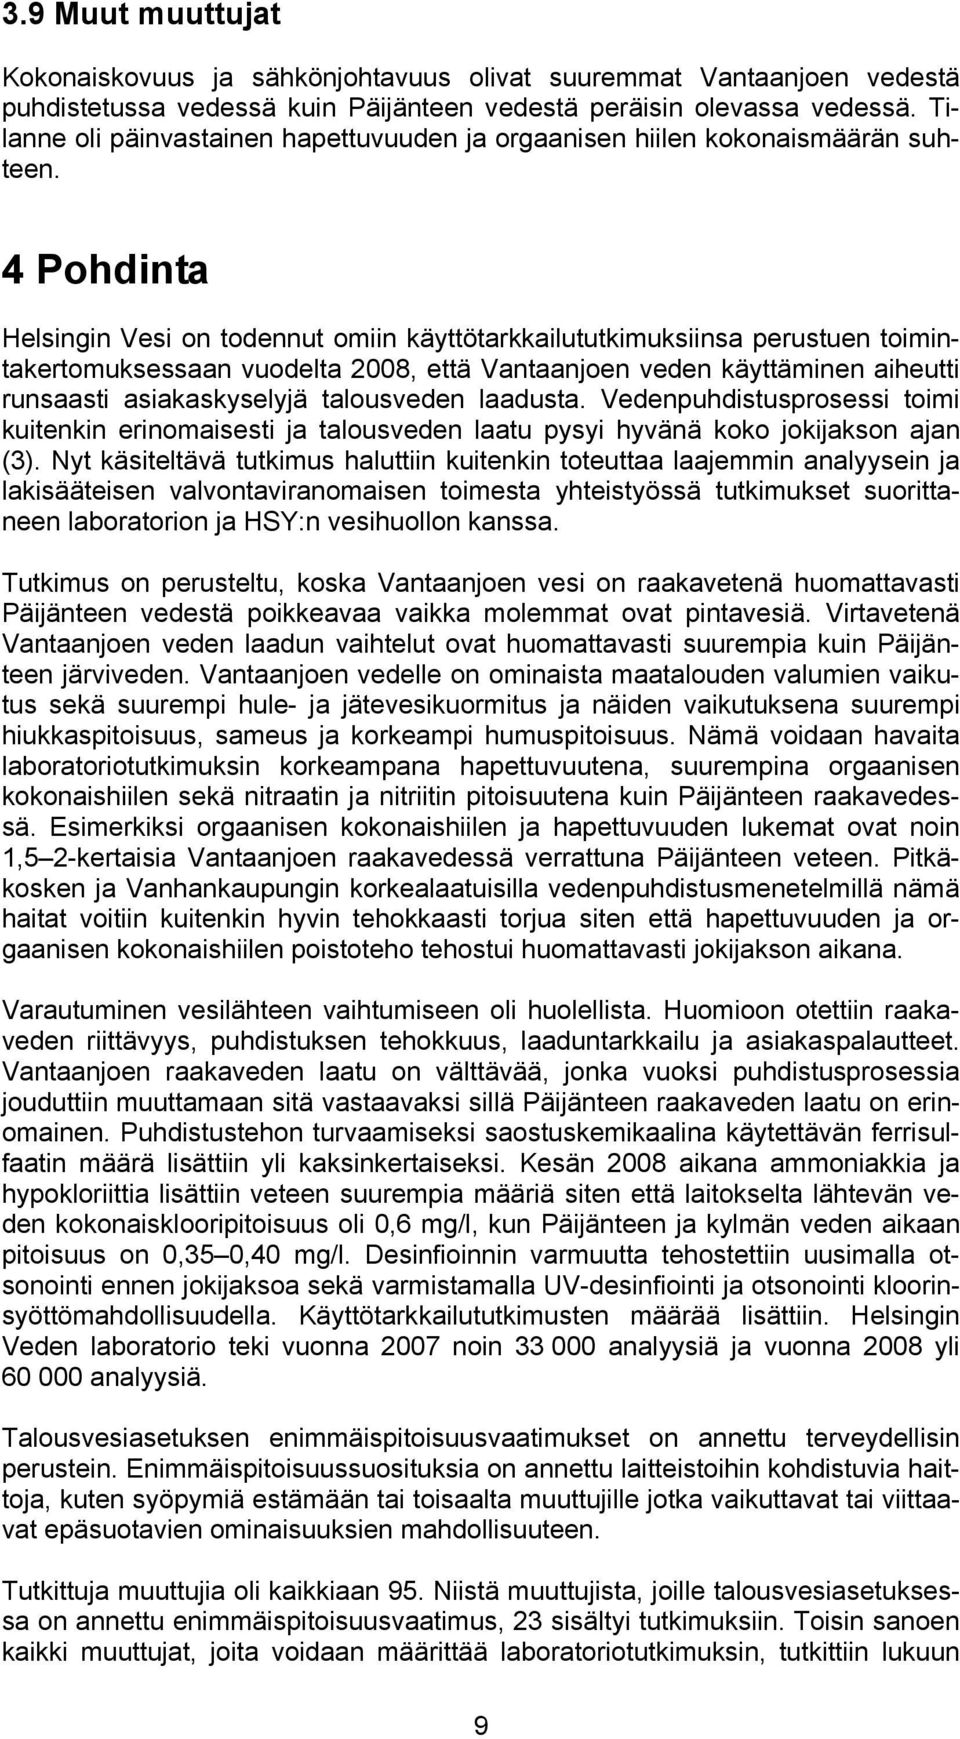 4 Pohdinta Helsingin Vesi on todennut omiin käyttötarkkailututkimuksiinsa perustuen toimintakertomuksessaan vuodelta 2008, että Vantaanjoen veden käyttäminen aiheutti runsaasti asiakaskyselyjä